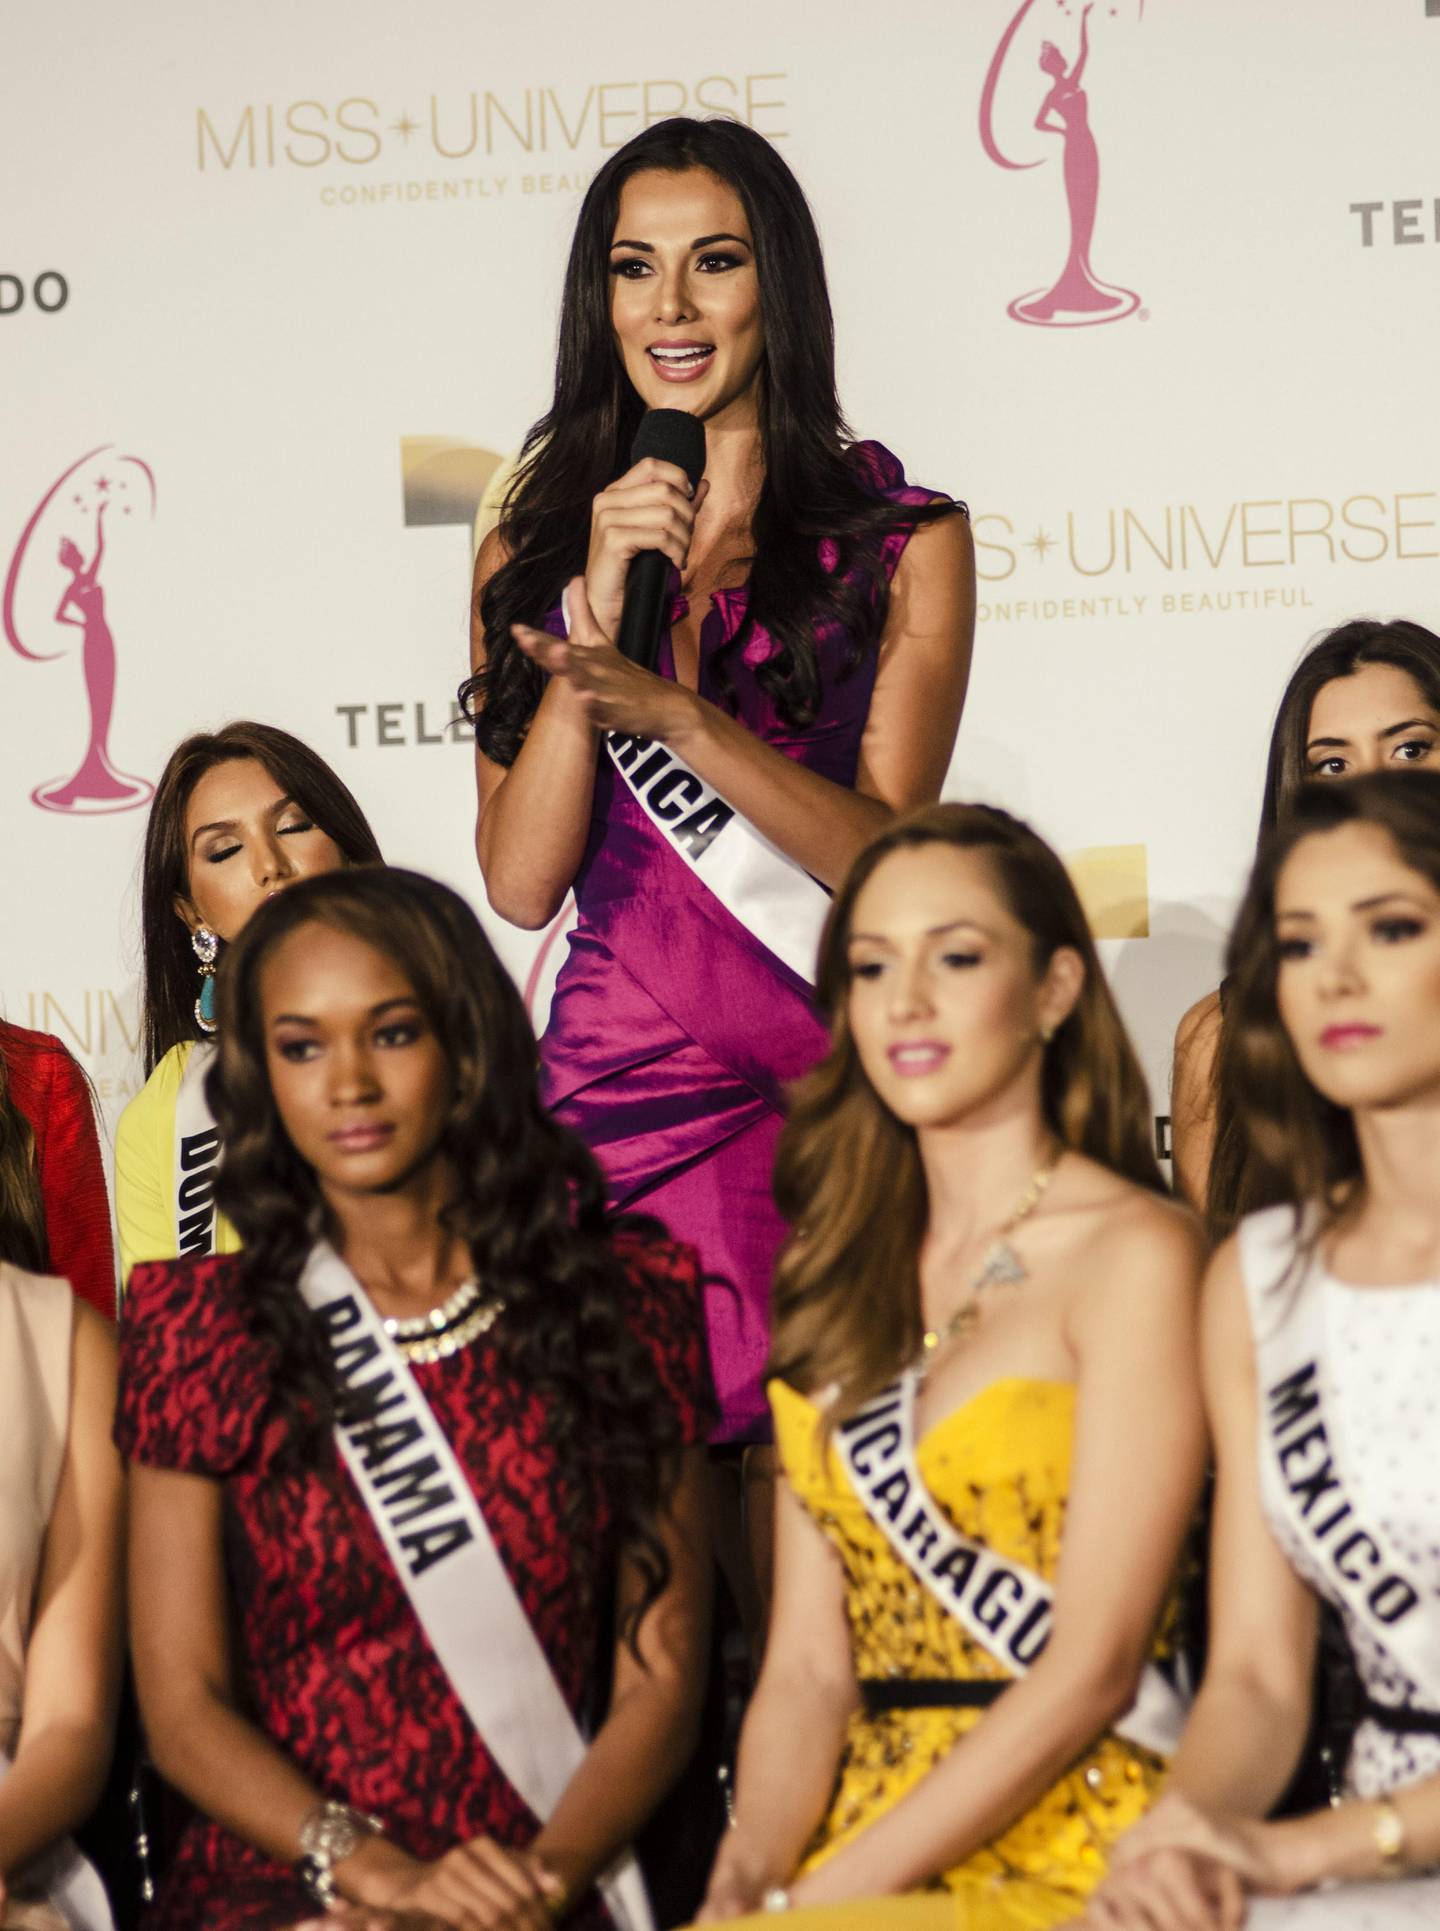 Camino a Miss Universo Costa Rica fue noticia en el mundo gracias a